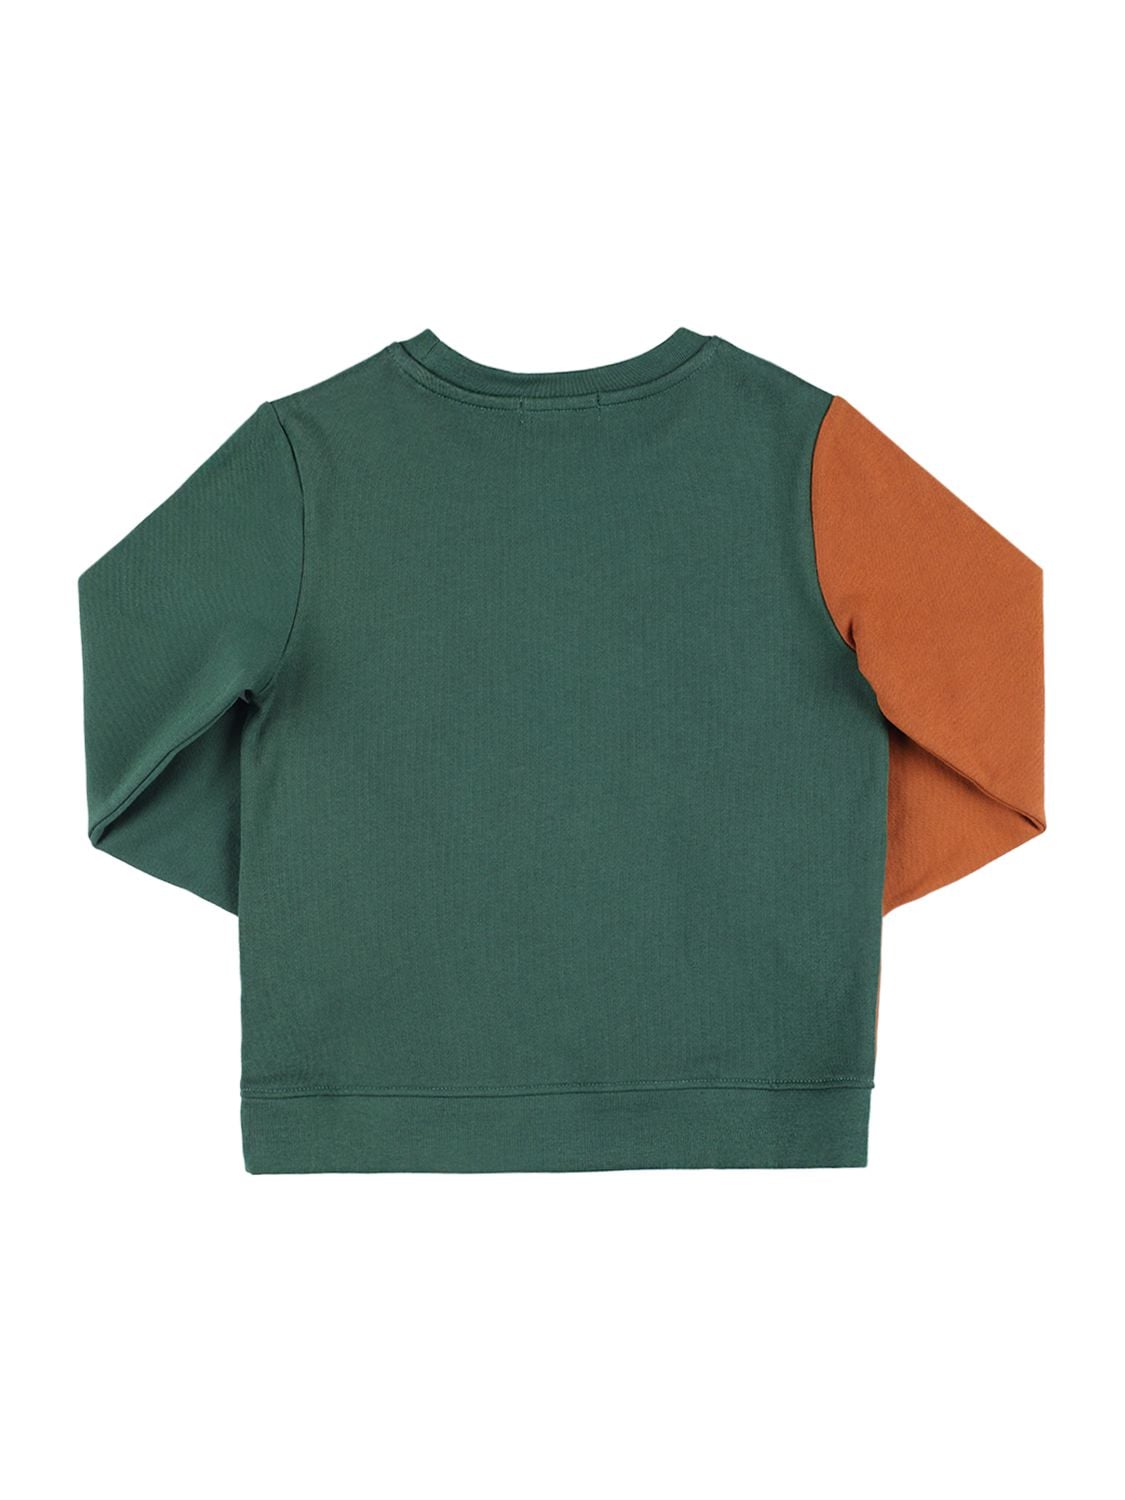 Shop Stella Mccartney Rubberized Organic Cotton Sweatshirt In Green,brown